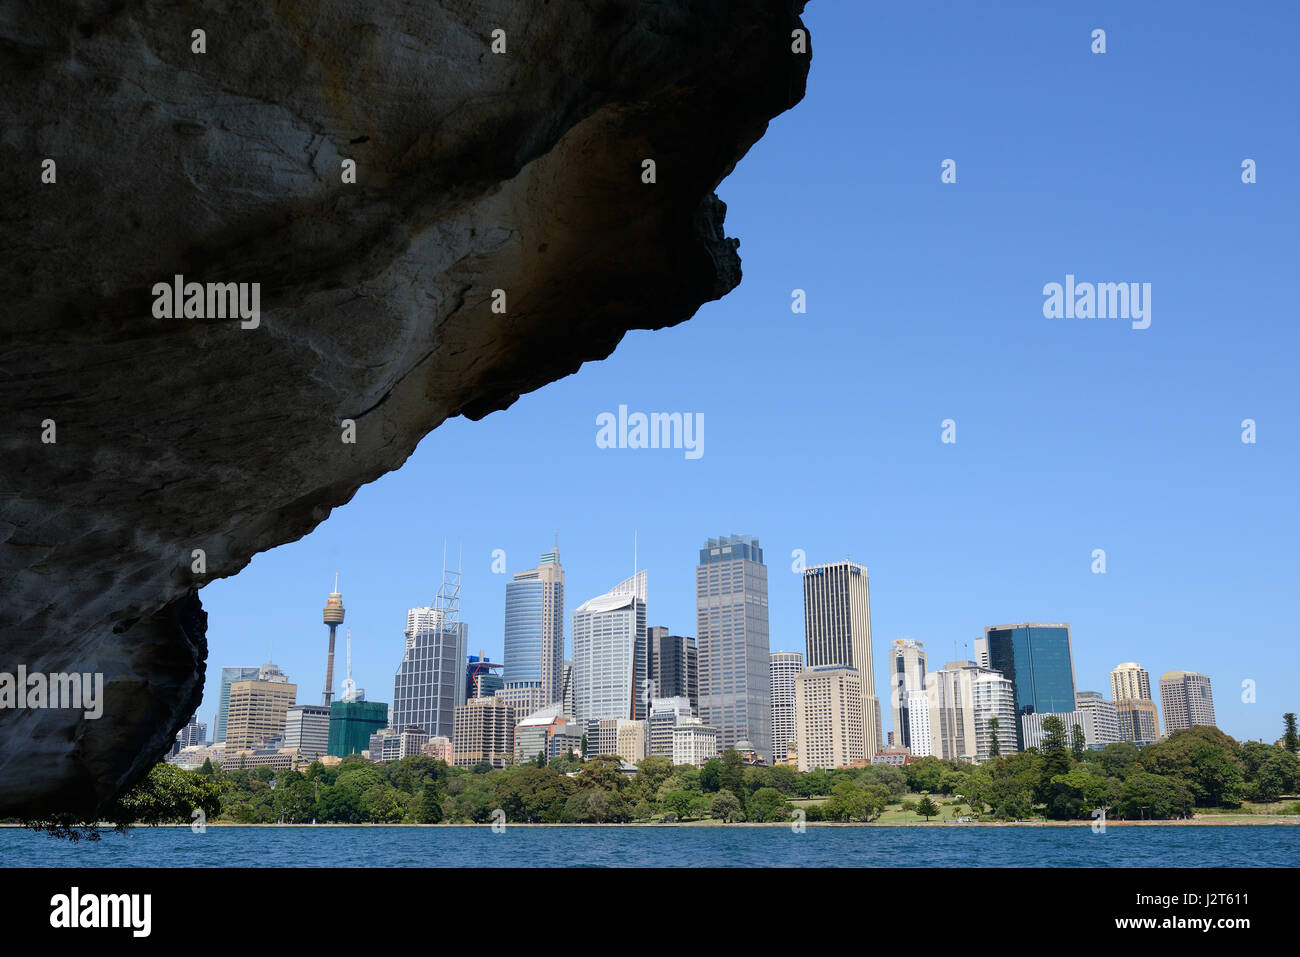 Skyline degli altipiani di Sydney incorniciata da uno sbalzo roccioso. Nuovo Galles del Sud, Australia. Foto Stock